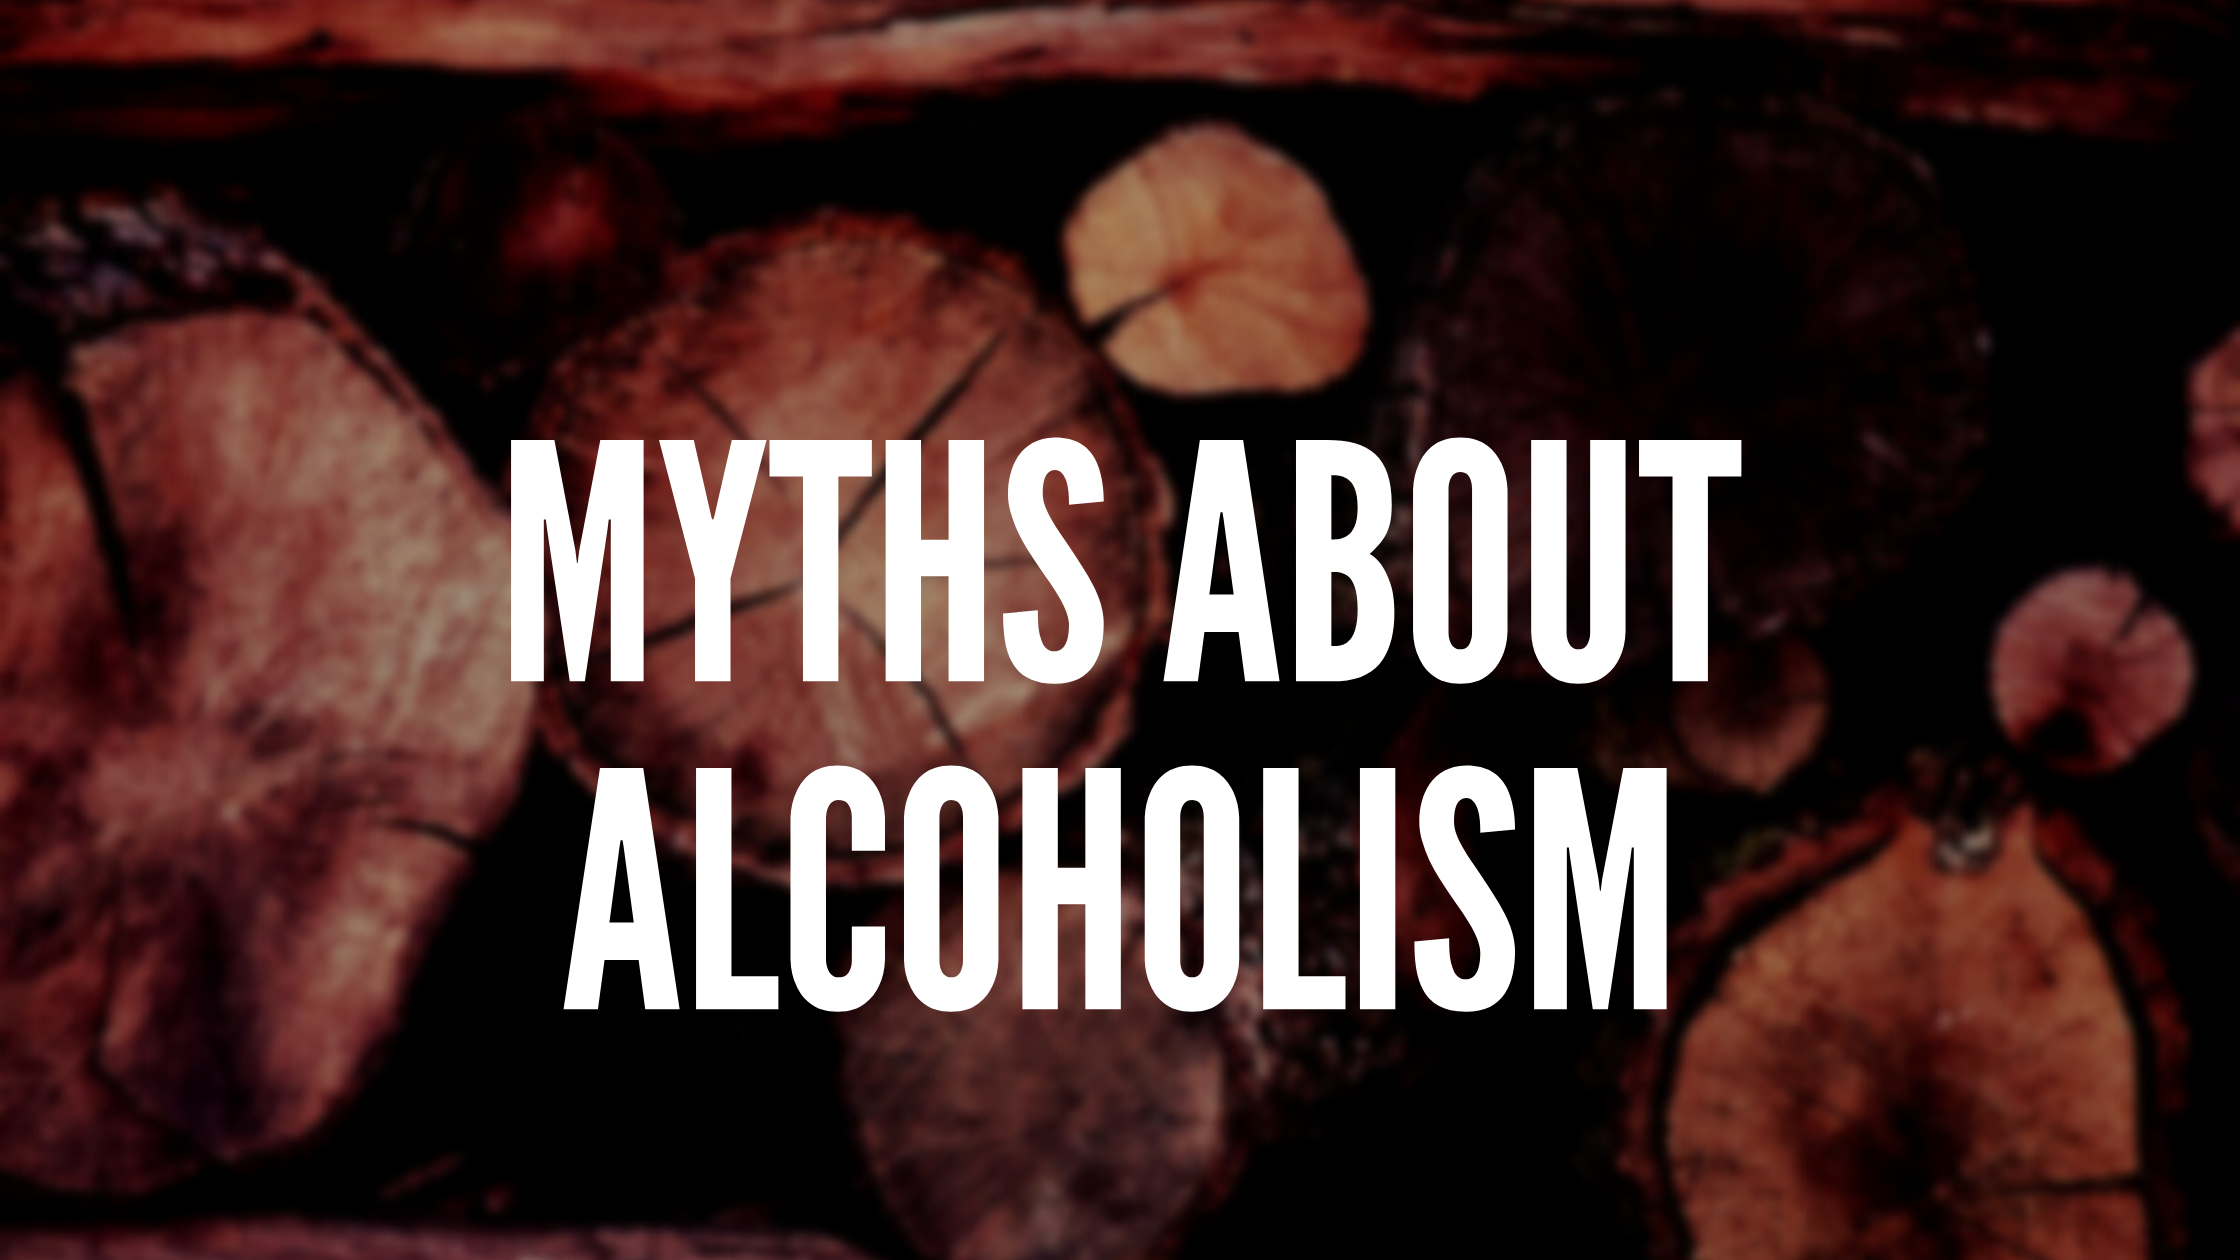 Myths about alcoholism